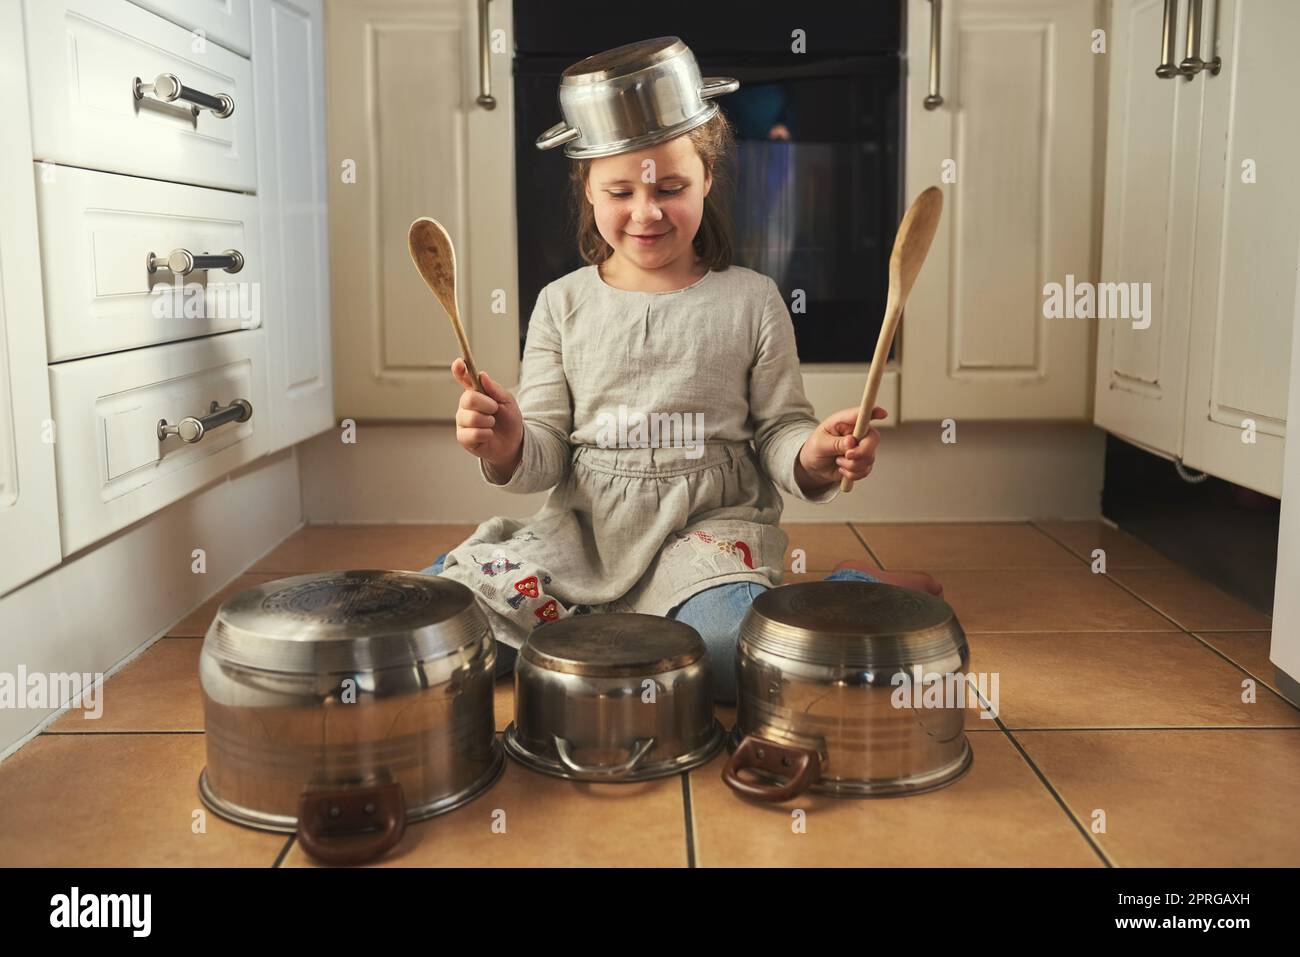 Shes ein Rockstar in der Herstellung. Ein kleines Mädchen Schlagzeug auf einem Satz von Töpfen in der Küche spielen. Stockfoto